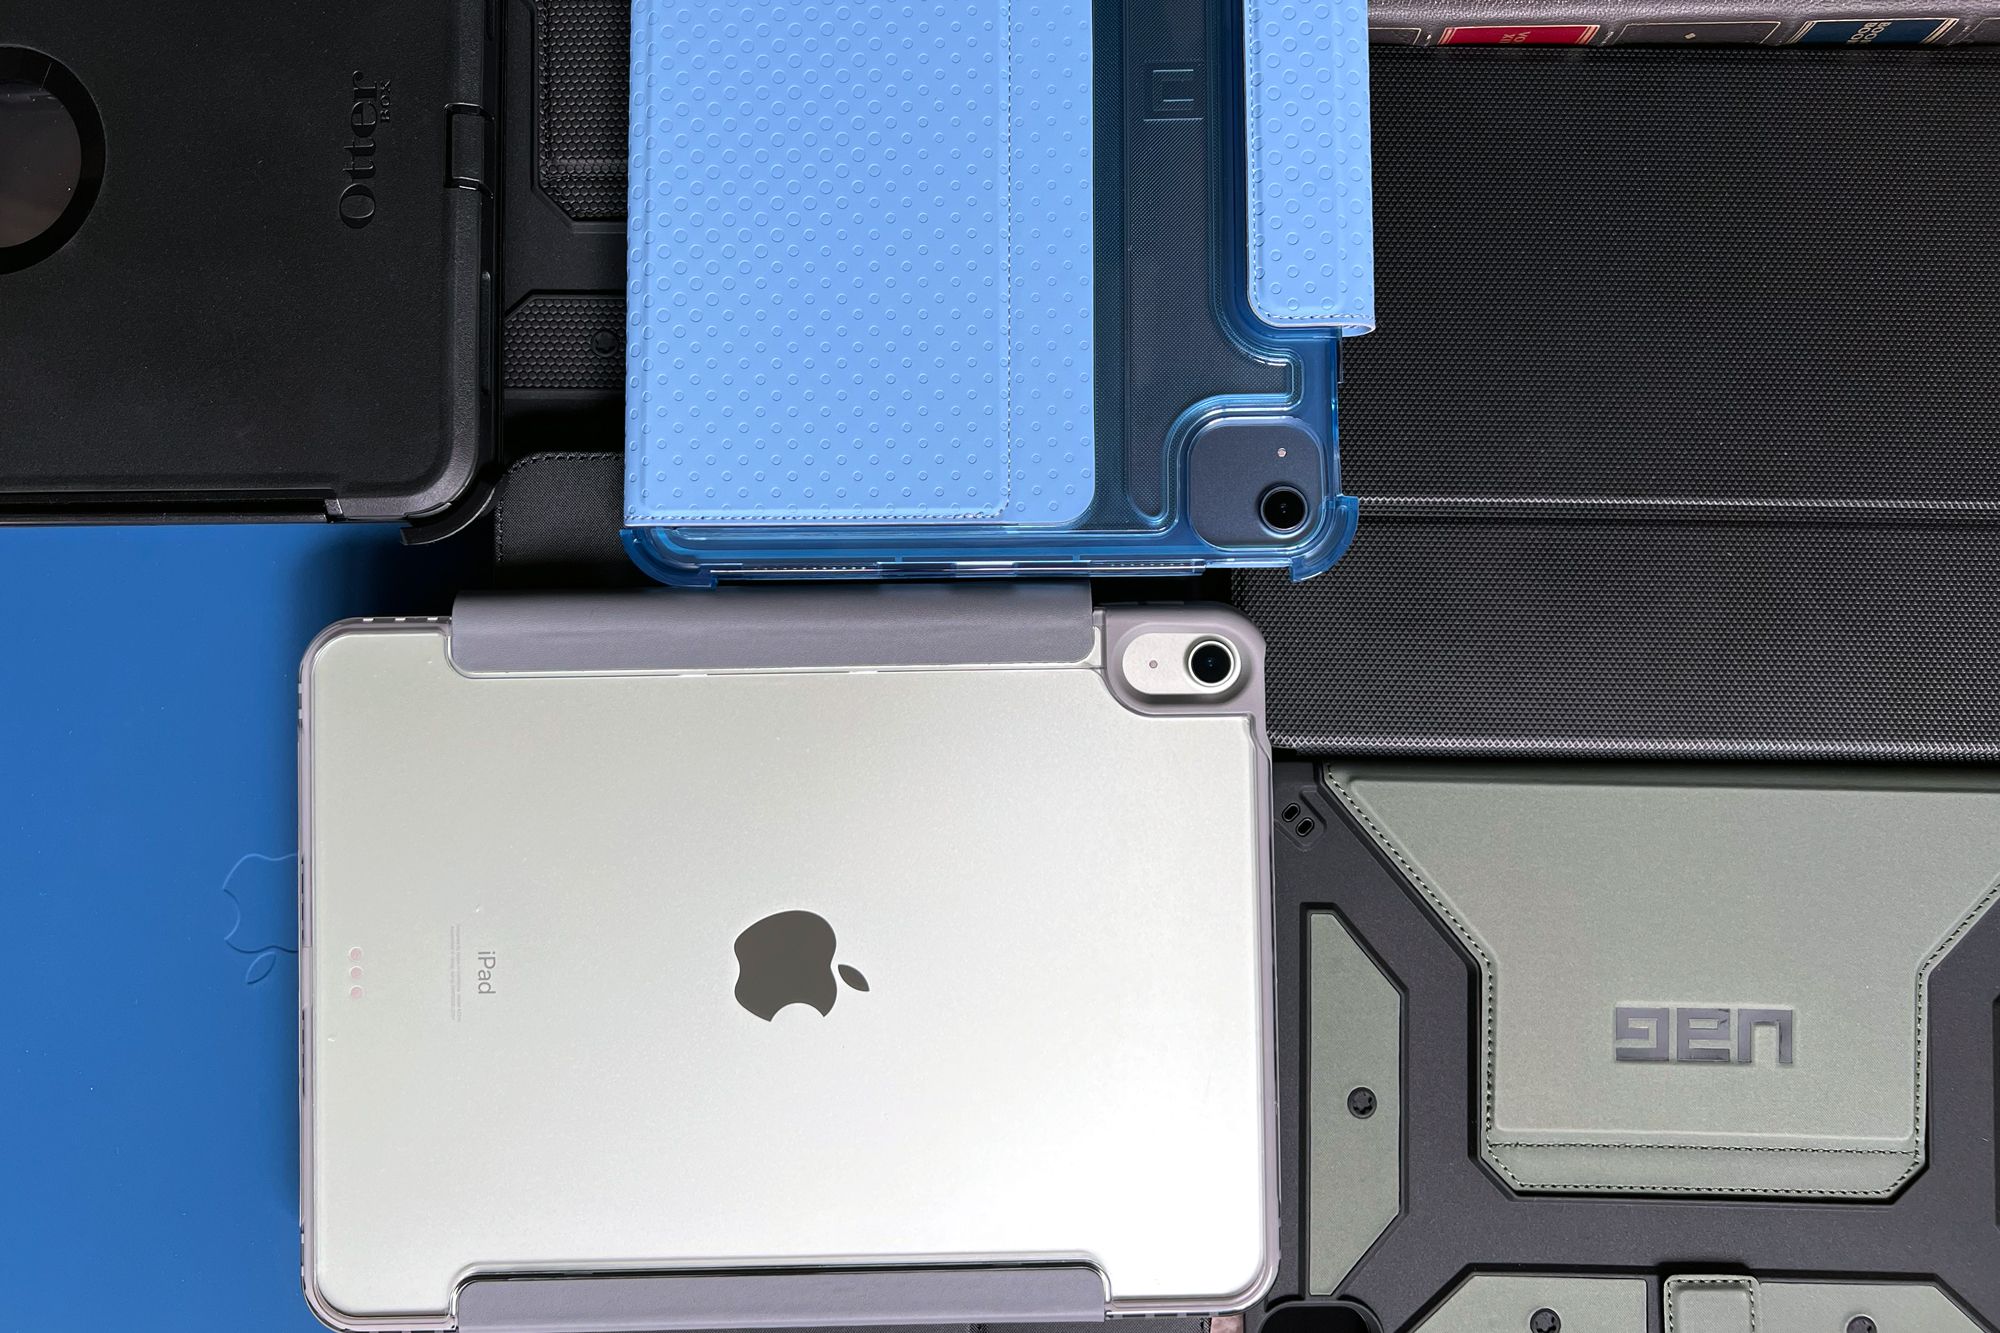 Top Ten Luxury iPad Cases